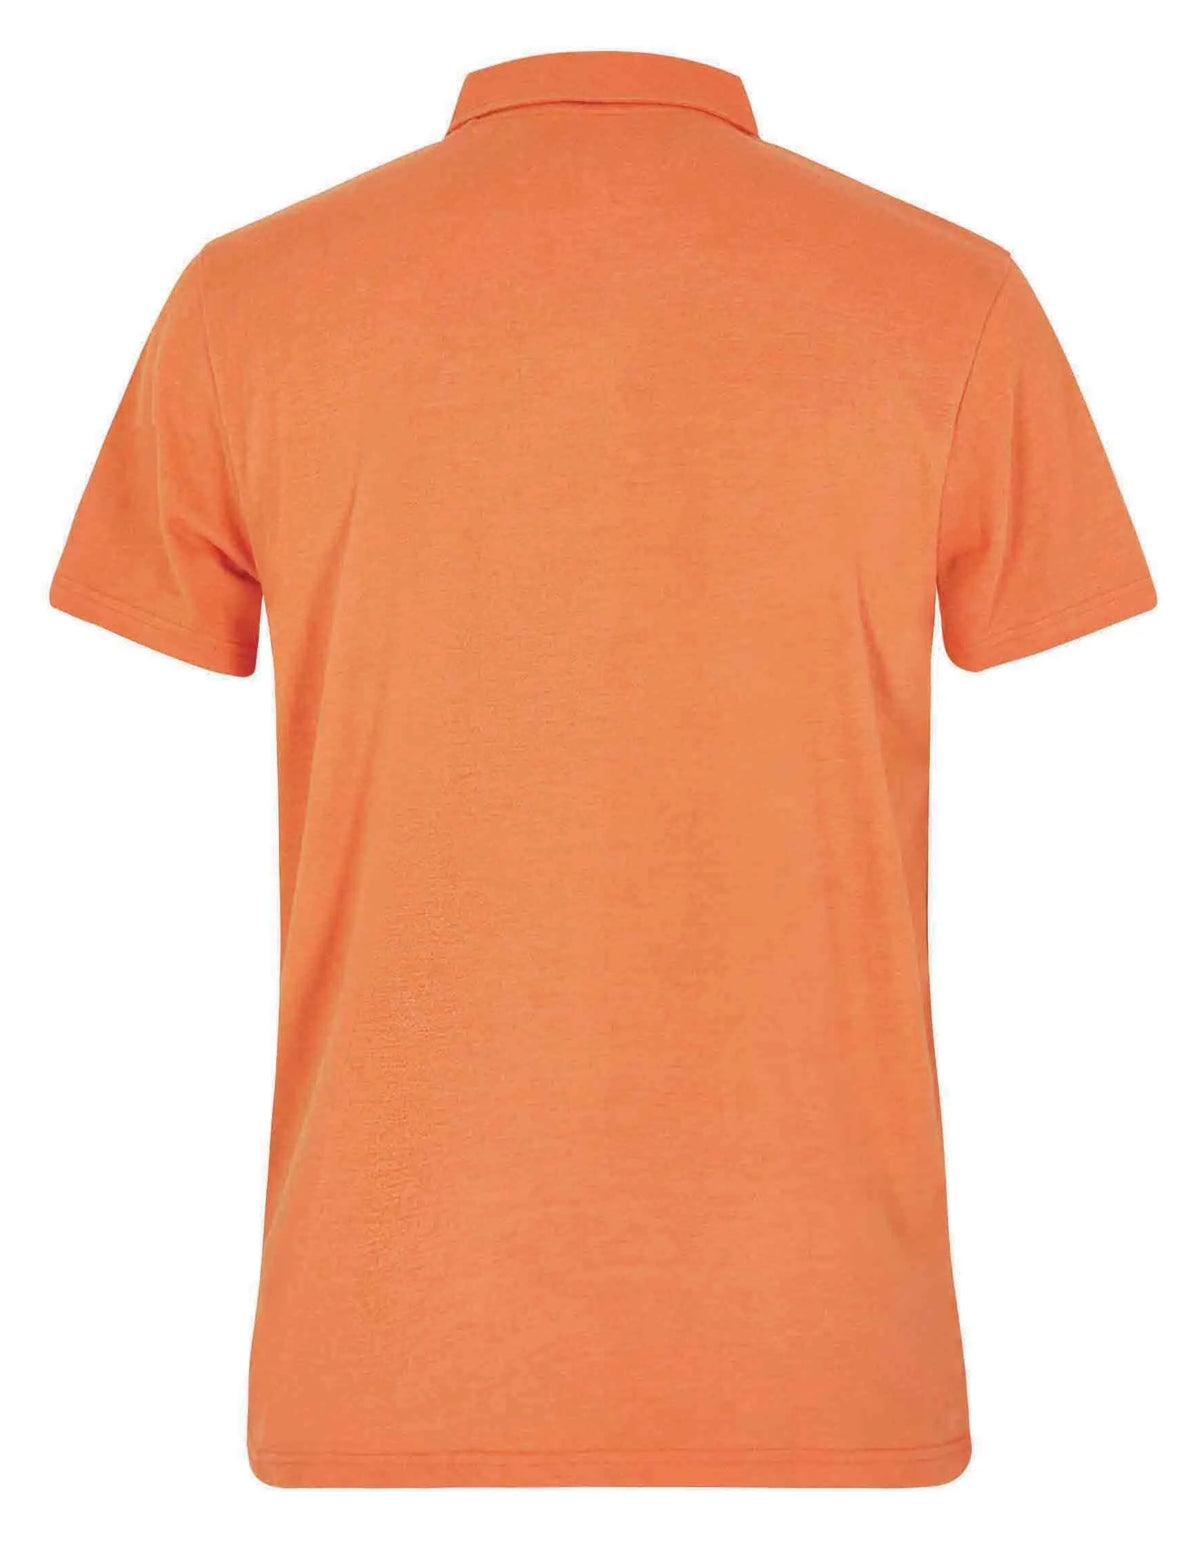 Men's two button neckline Jetstream polo shirt from Weird Fish in Mango Orange.